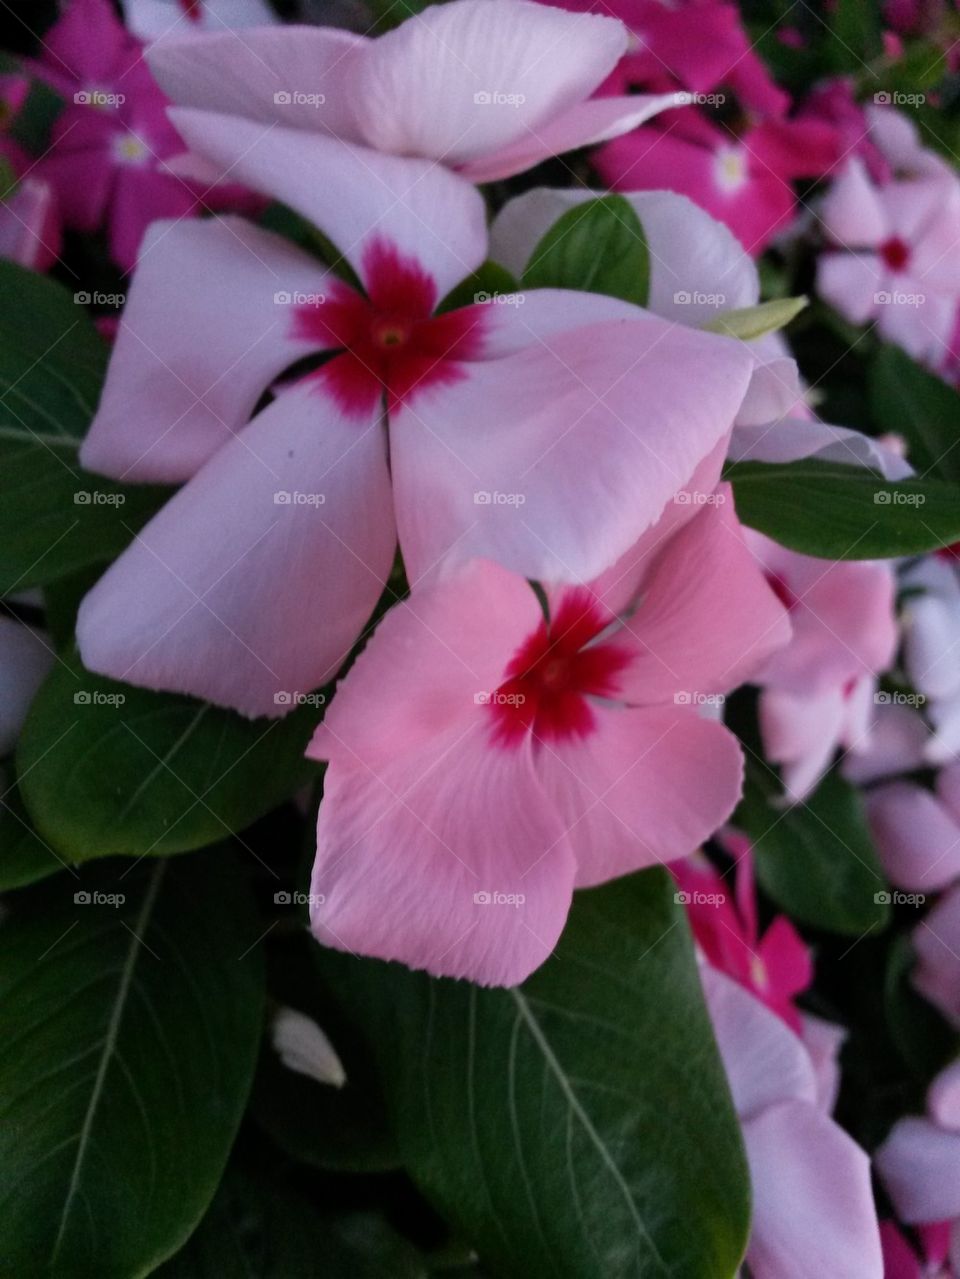 Periwinkle Flowers